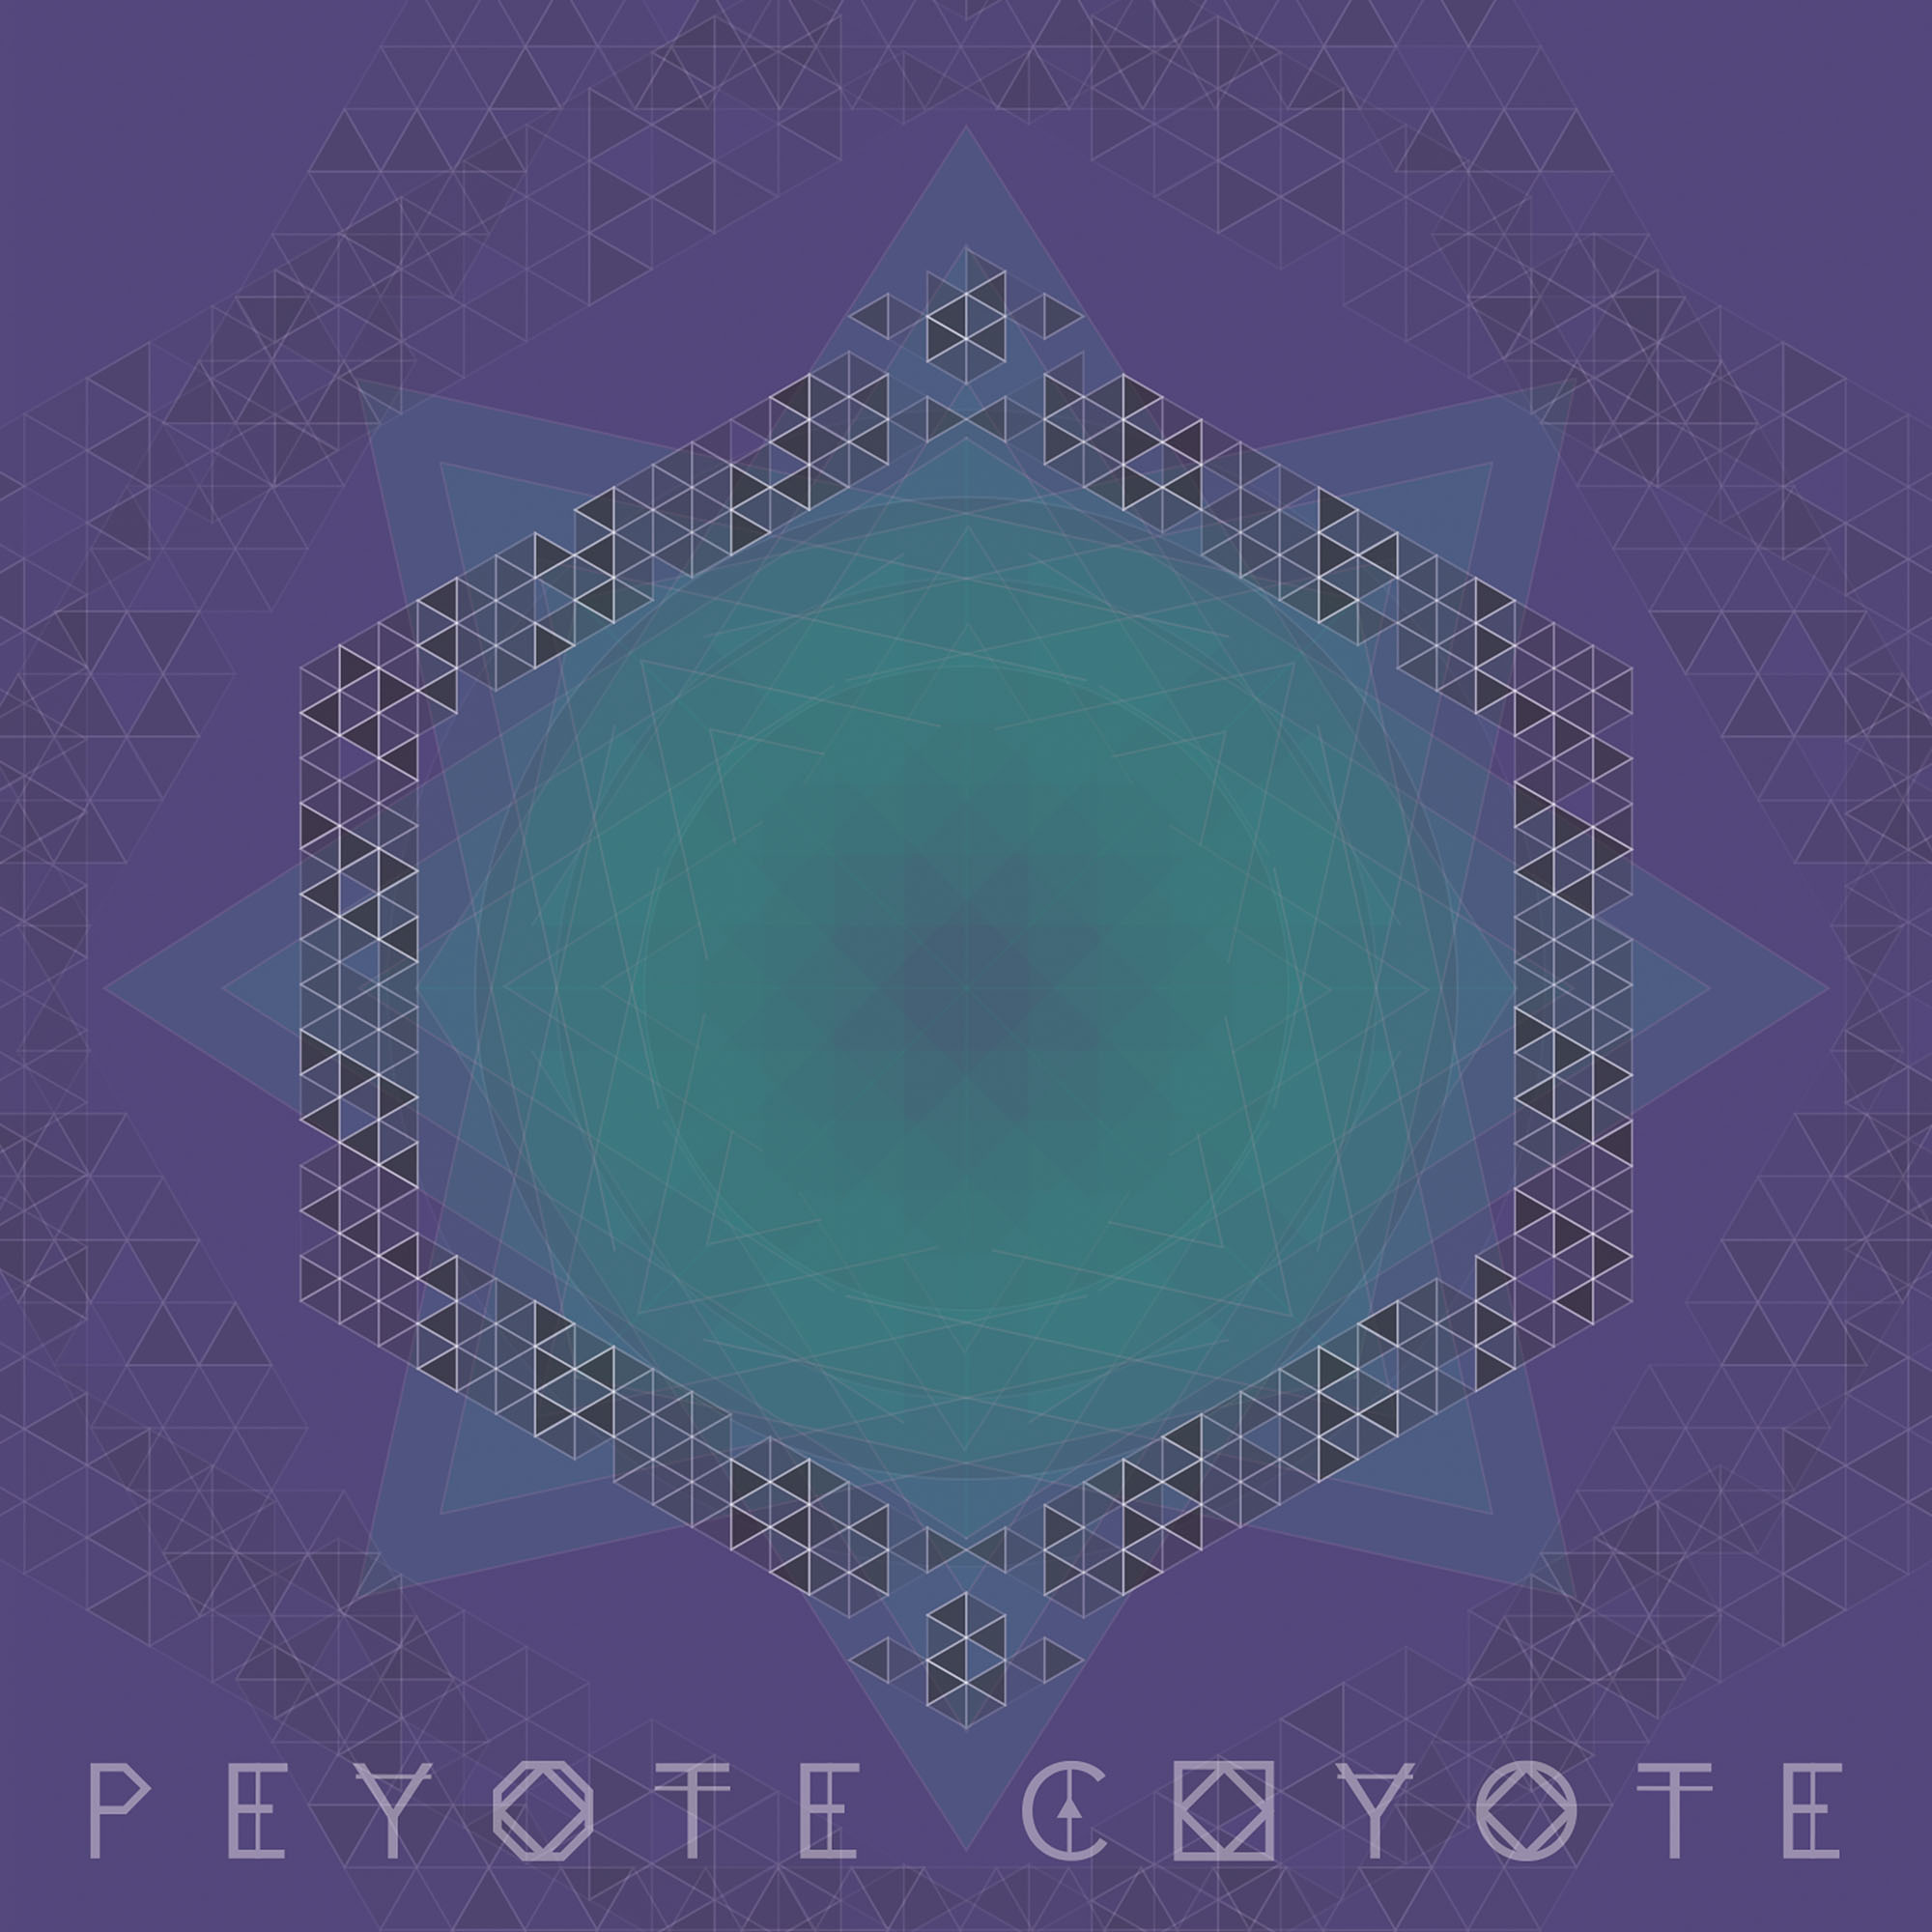 3-Peyote-Coyote-album-art-by-Ayrton-Fuentes.jpg